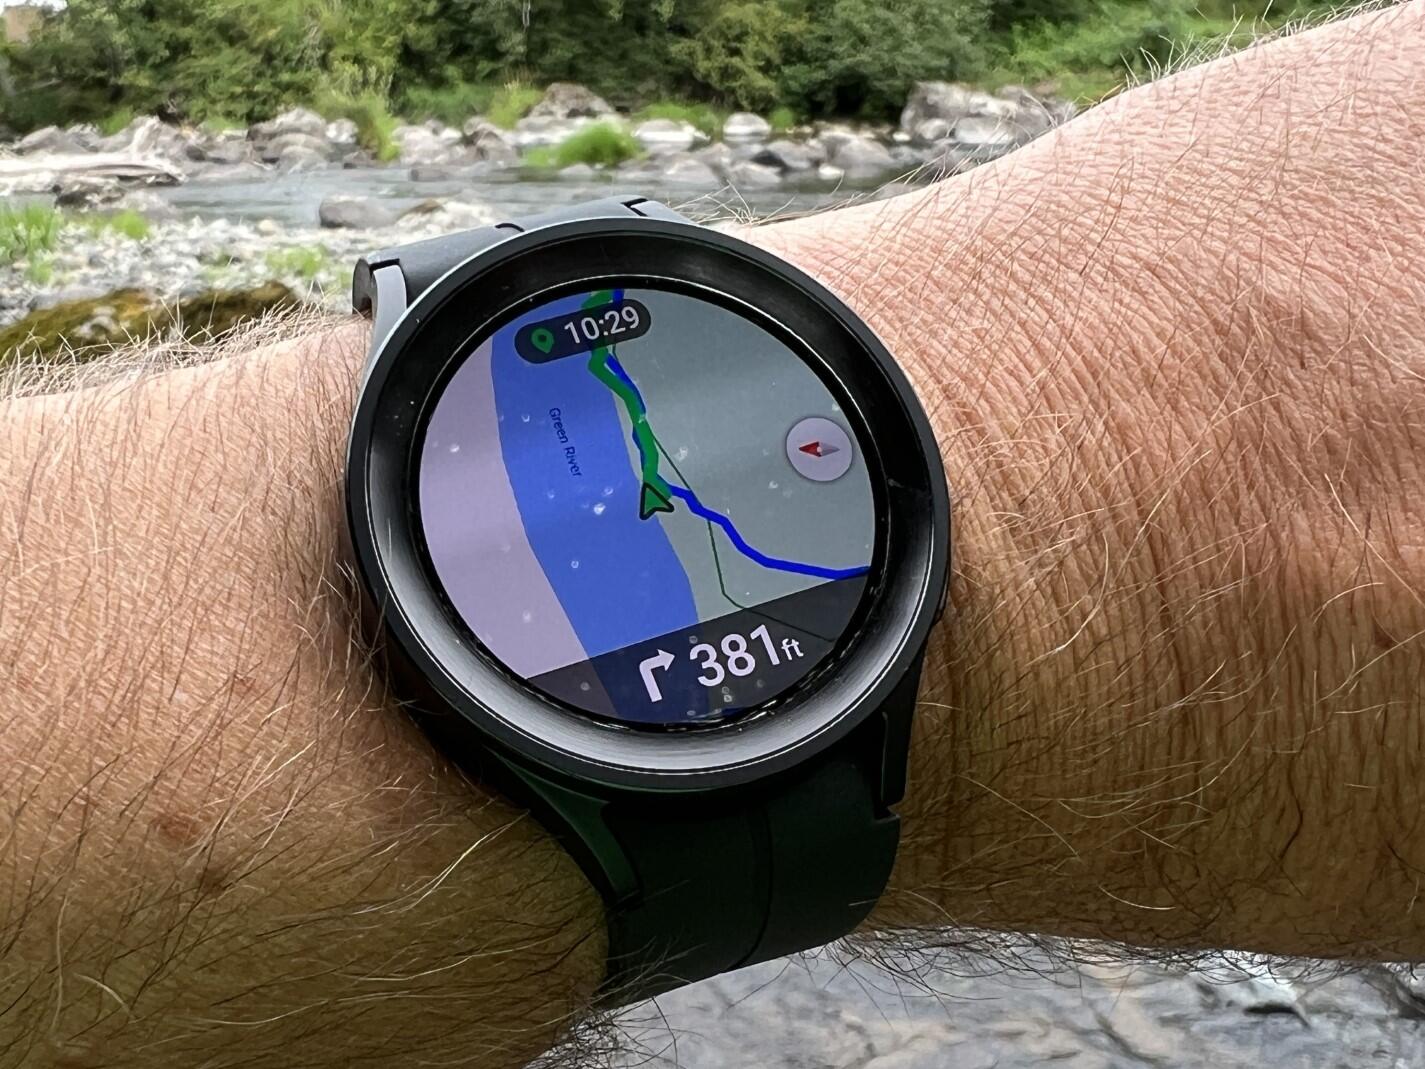 Samsung Galaxy Watch 5 Pro - wearable: Hãy khám phá một cỗ máy đeo tay thông minh hoàn hảo, Samsung Galaxy Watch 5 Pro! Với thiết kế sang trọng, tính năng thông minh đa dạng và đáng tin cậy, chiếc đồng hồ này sẽ là một trợ thủ đắc lực cho cuộc sống của bạn.